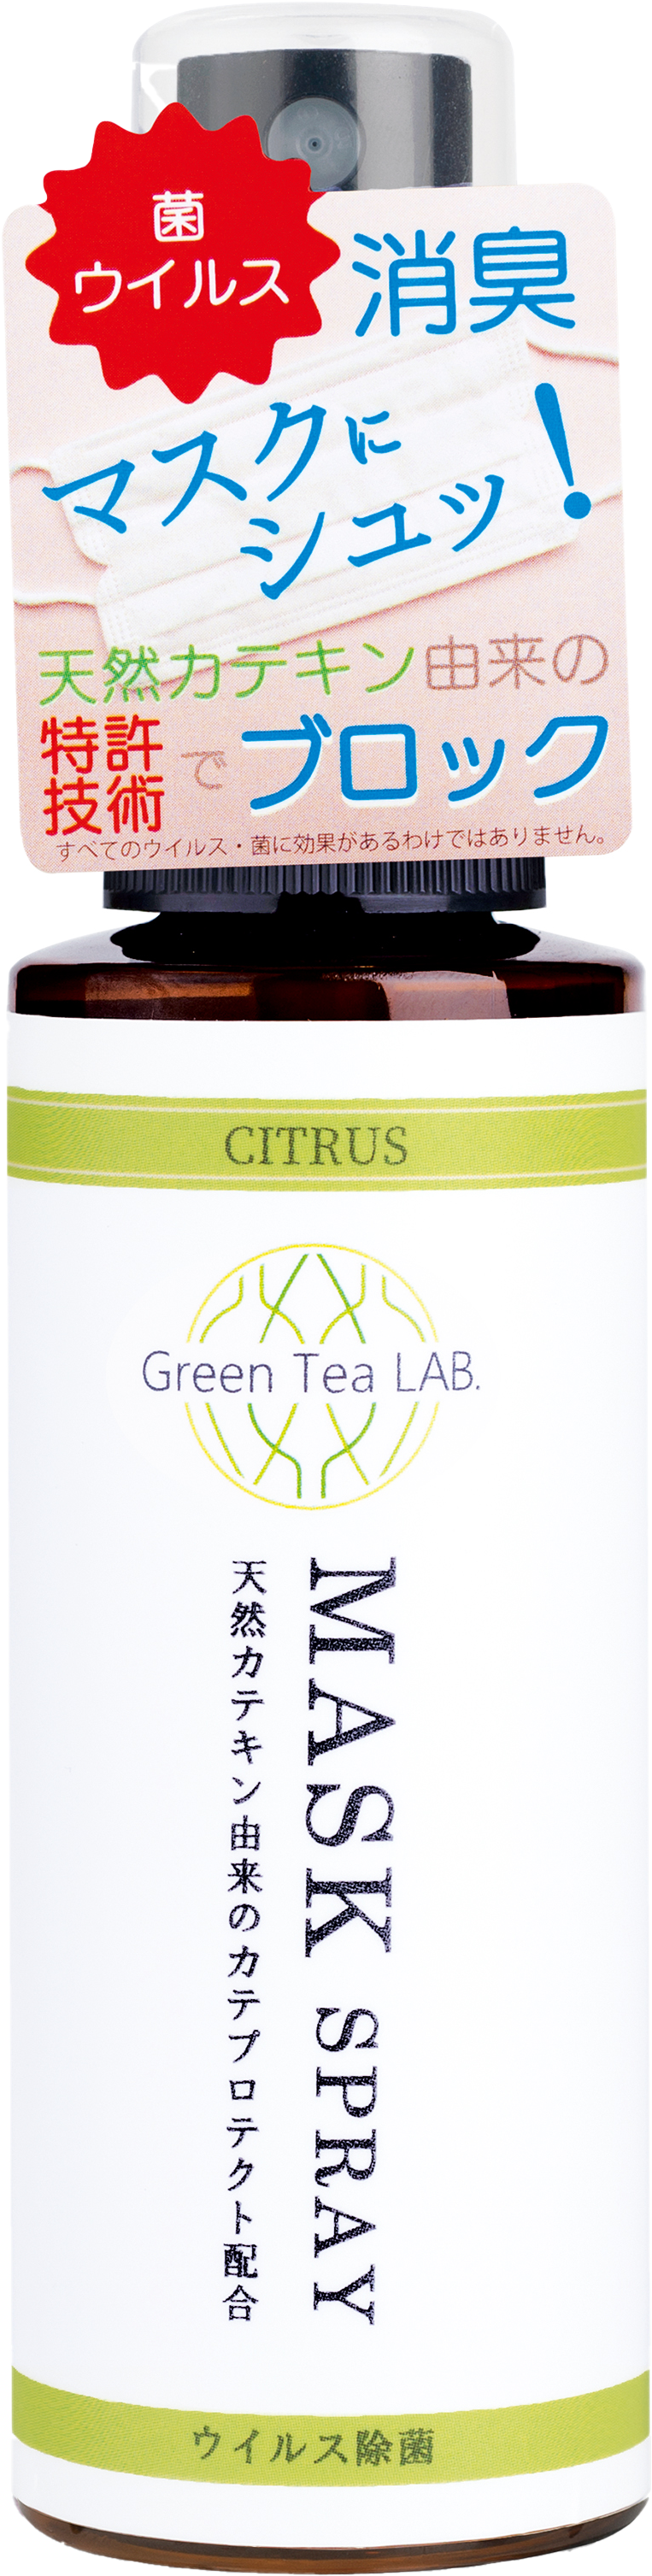 Green Tea LAB（グリーンティーラボ） | MASK SPRAY | 抗菌・抗ウイルスマスクスプレー